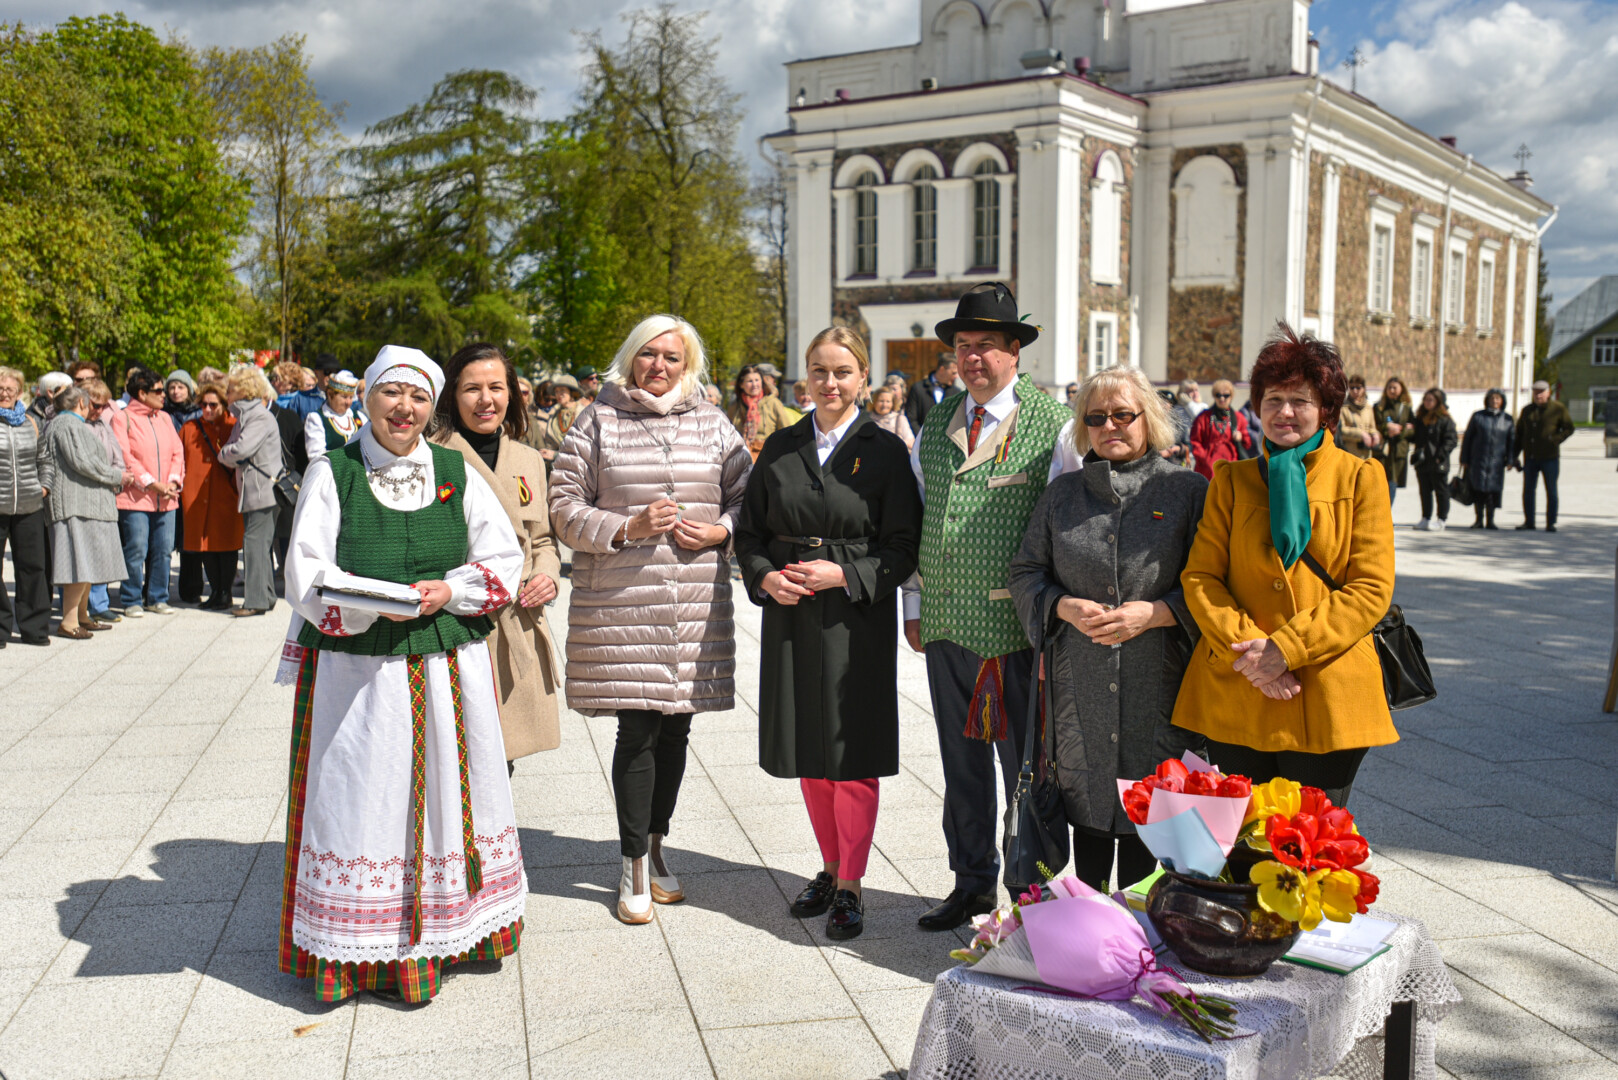 Panevėžiečius į Nepriklausomybės aikštėje surengtą Tautiškumo šventę pakvietęs Lietuvai pagražinti draugijos Panevėžio skyrius tikisi, kad toks renginys gegužės 1-ąją taps nauja miesto tradicija.